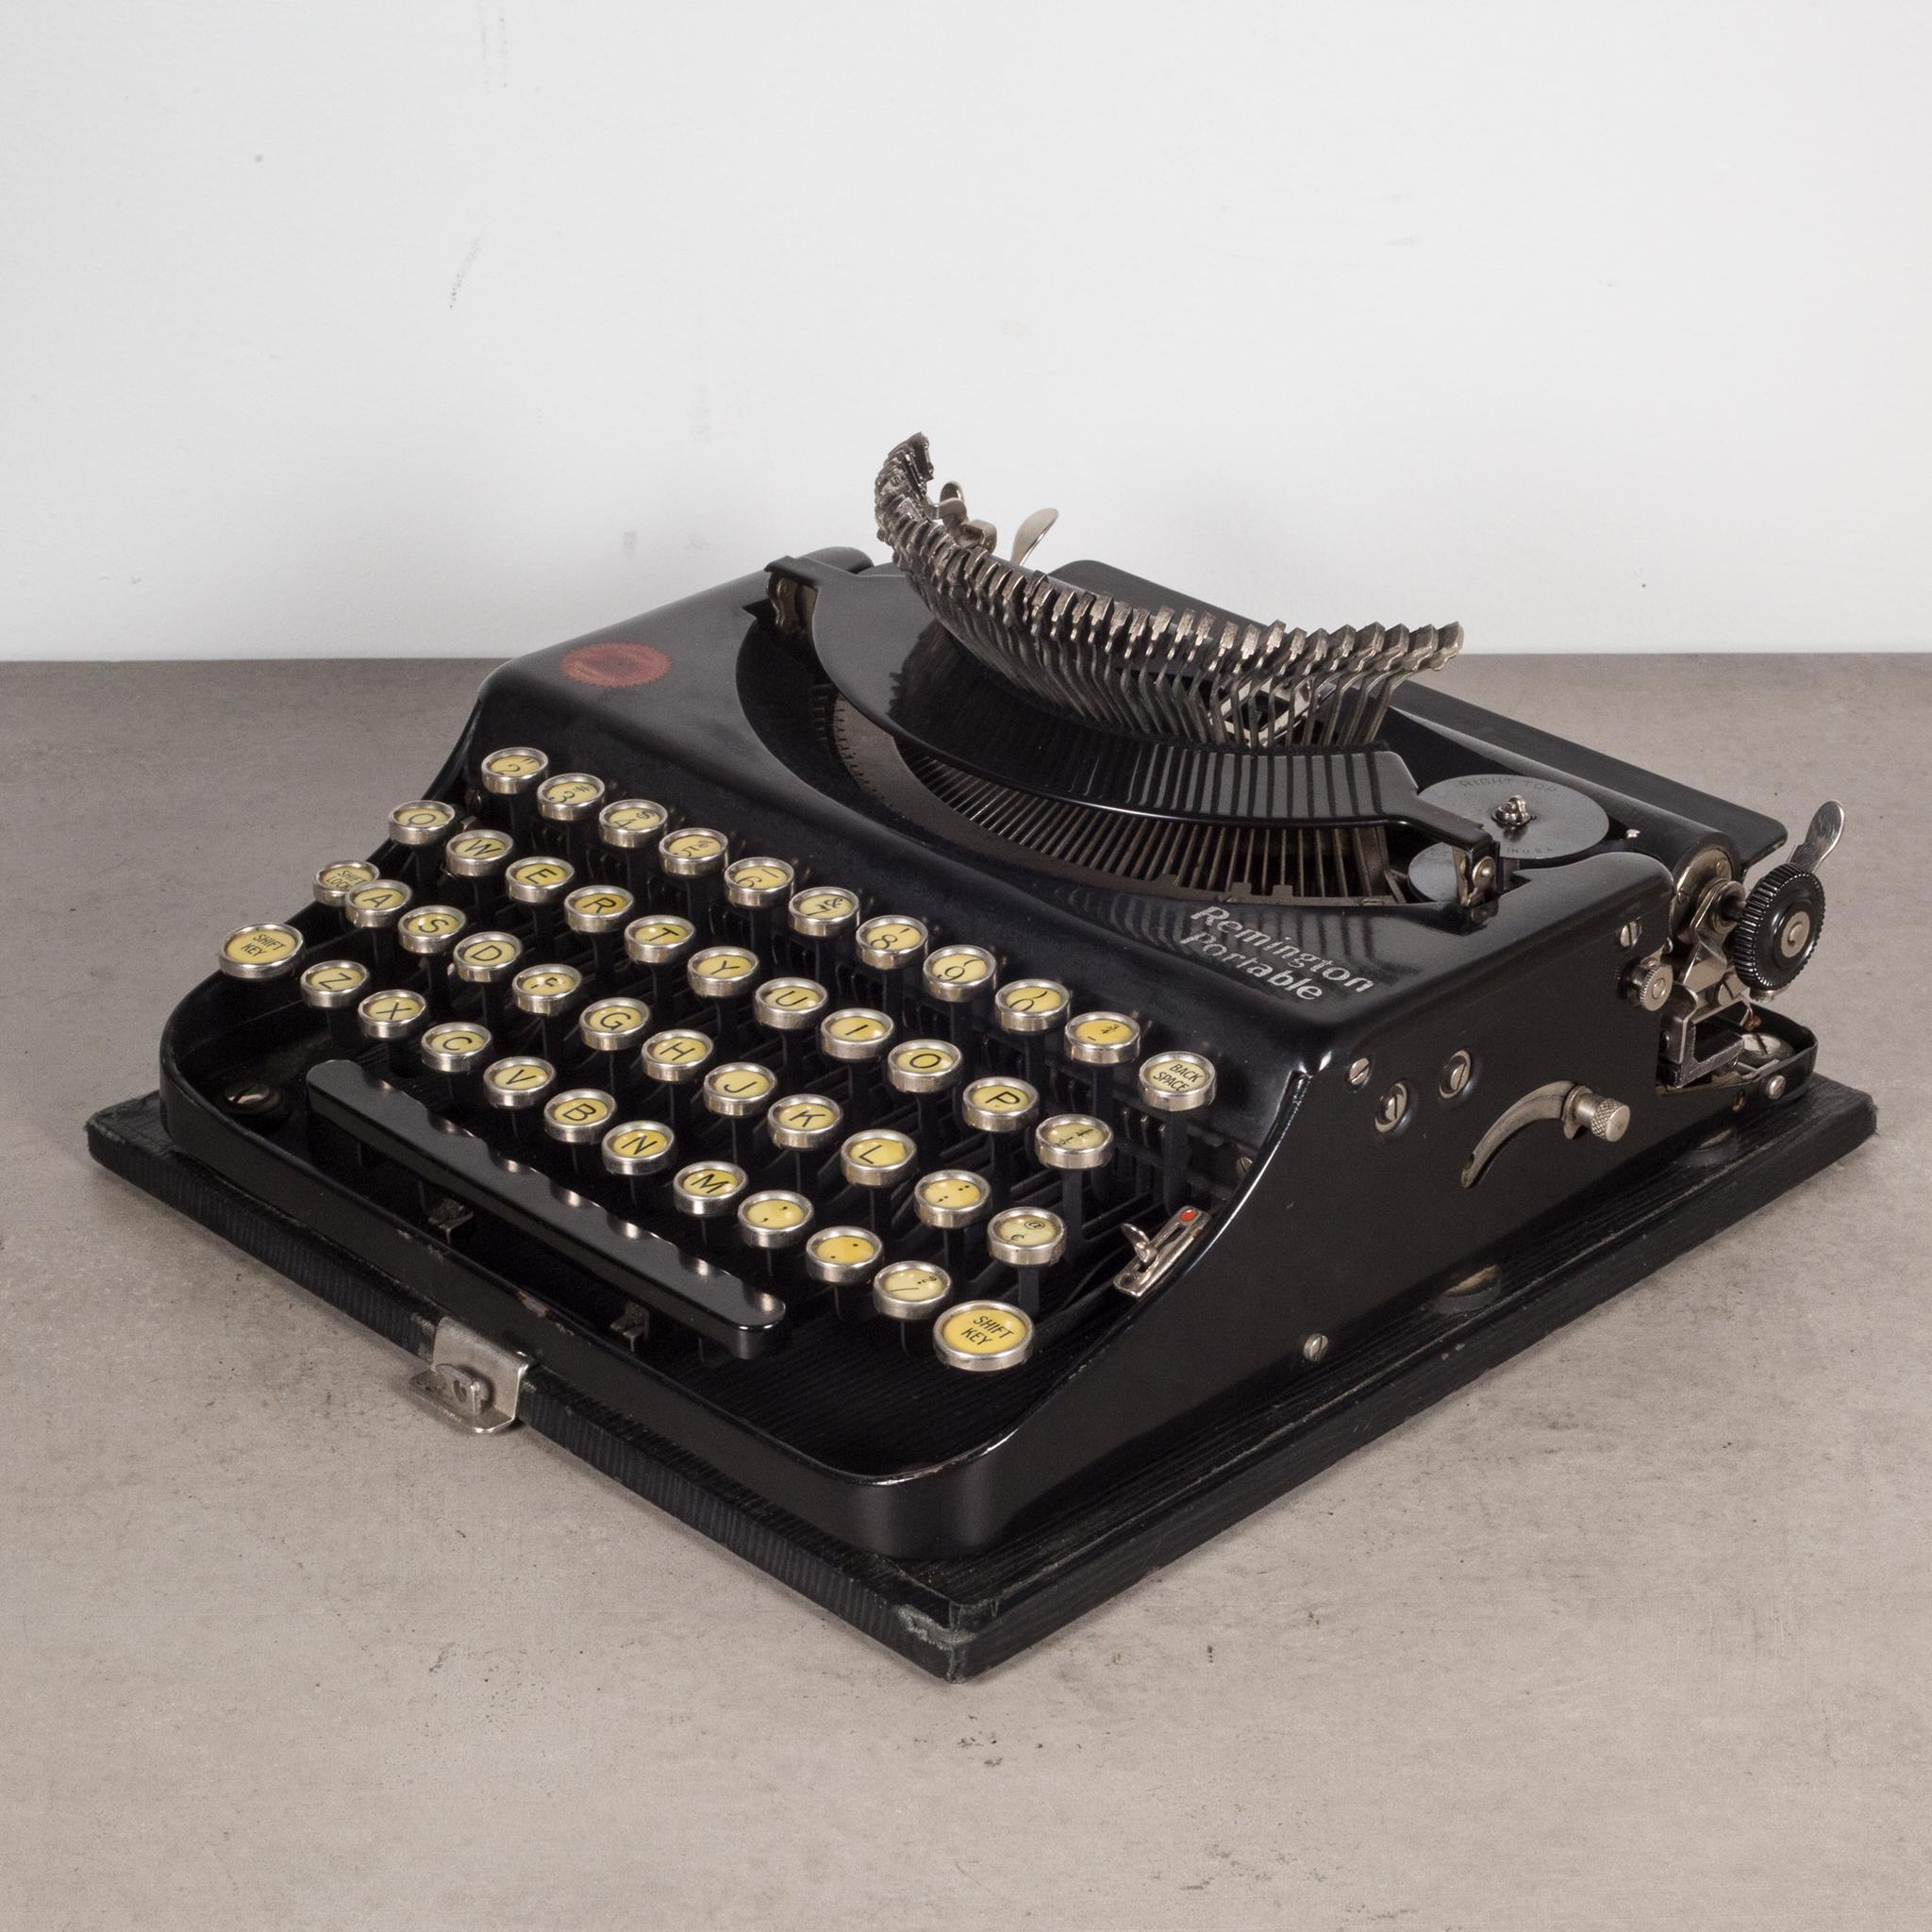 remington no 1 typewriter